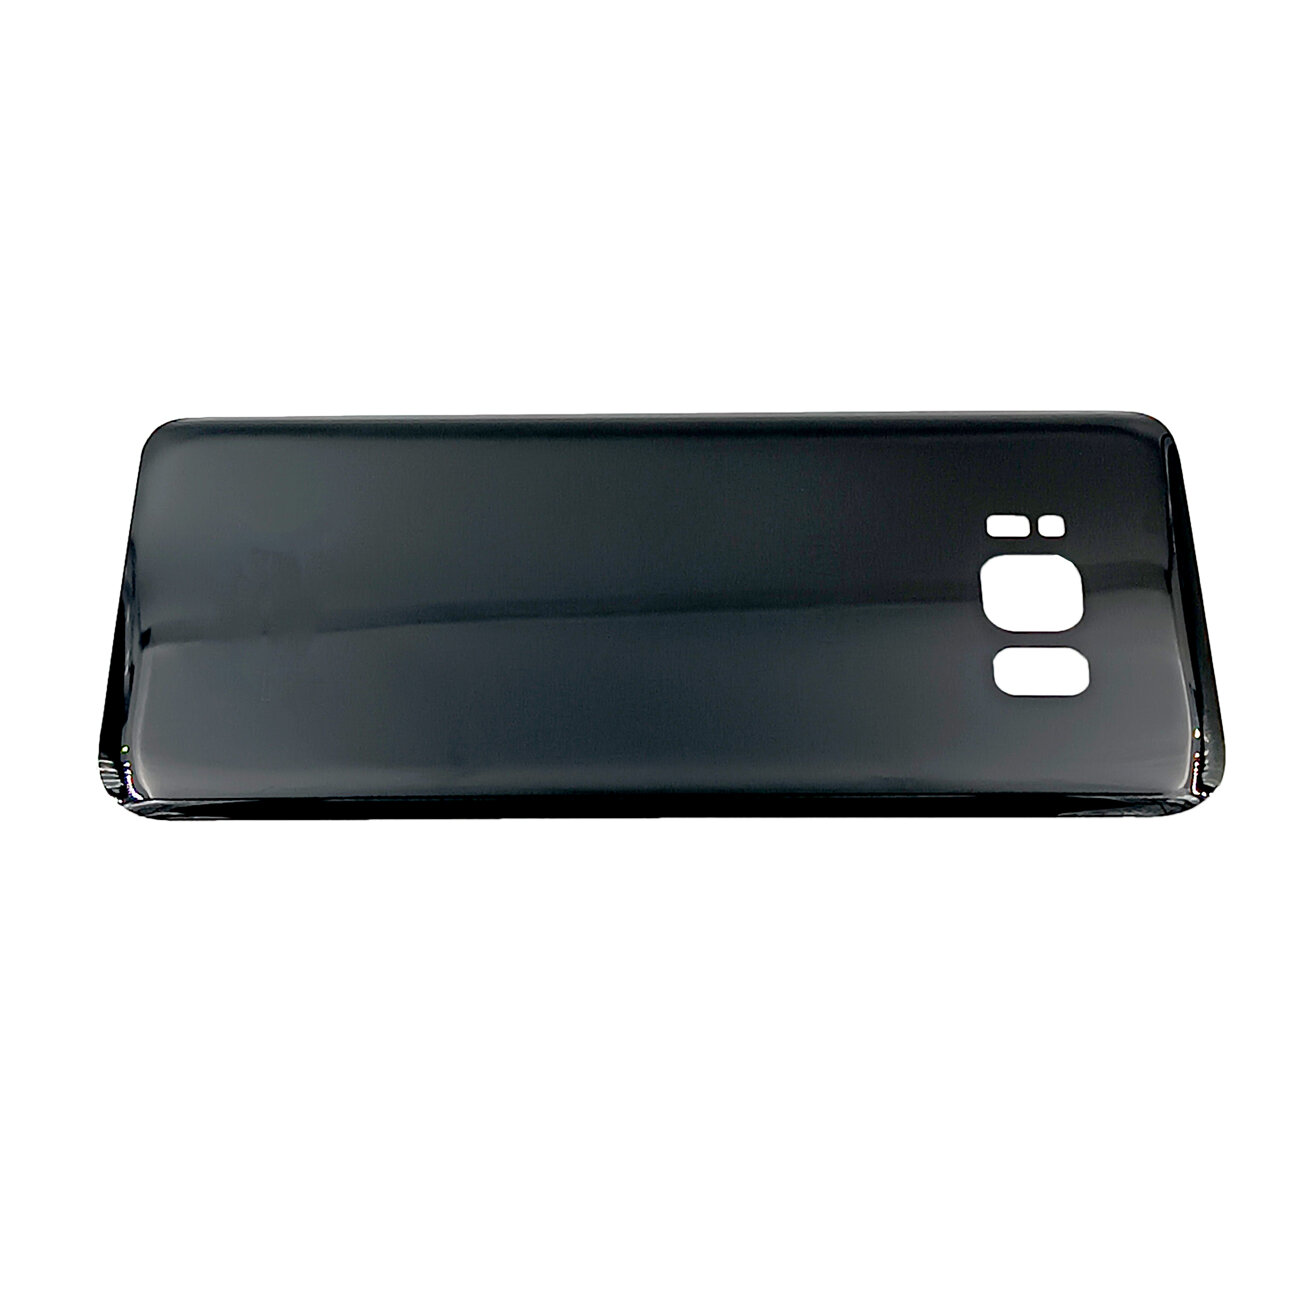 Задняя крышка для Samsung G950F (Galaxy S8) Черный